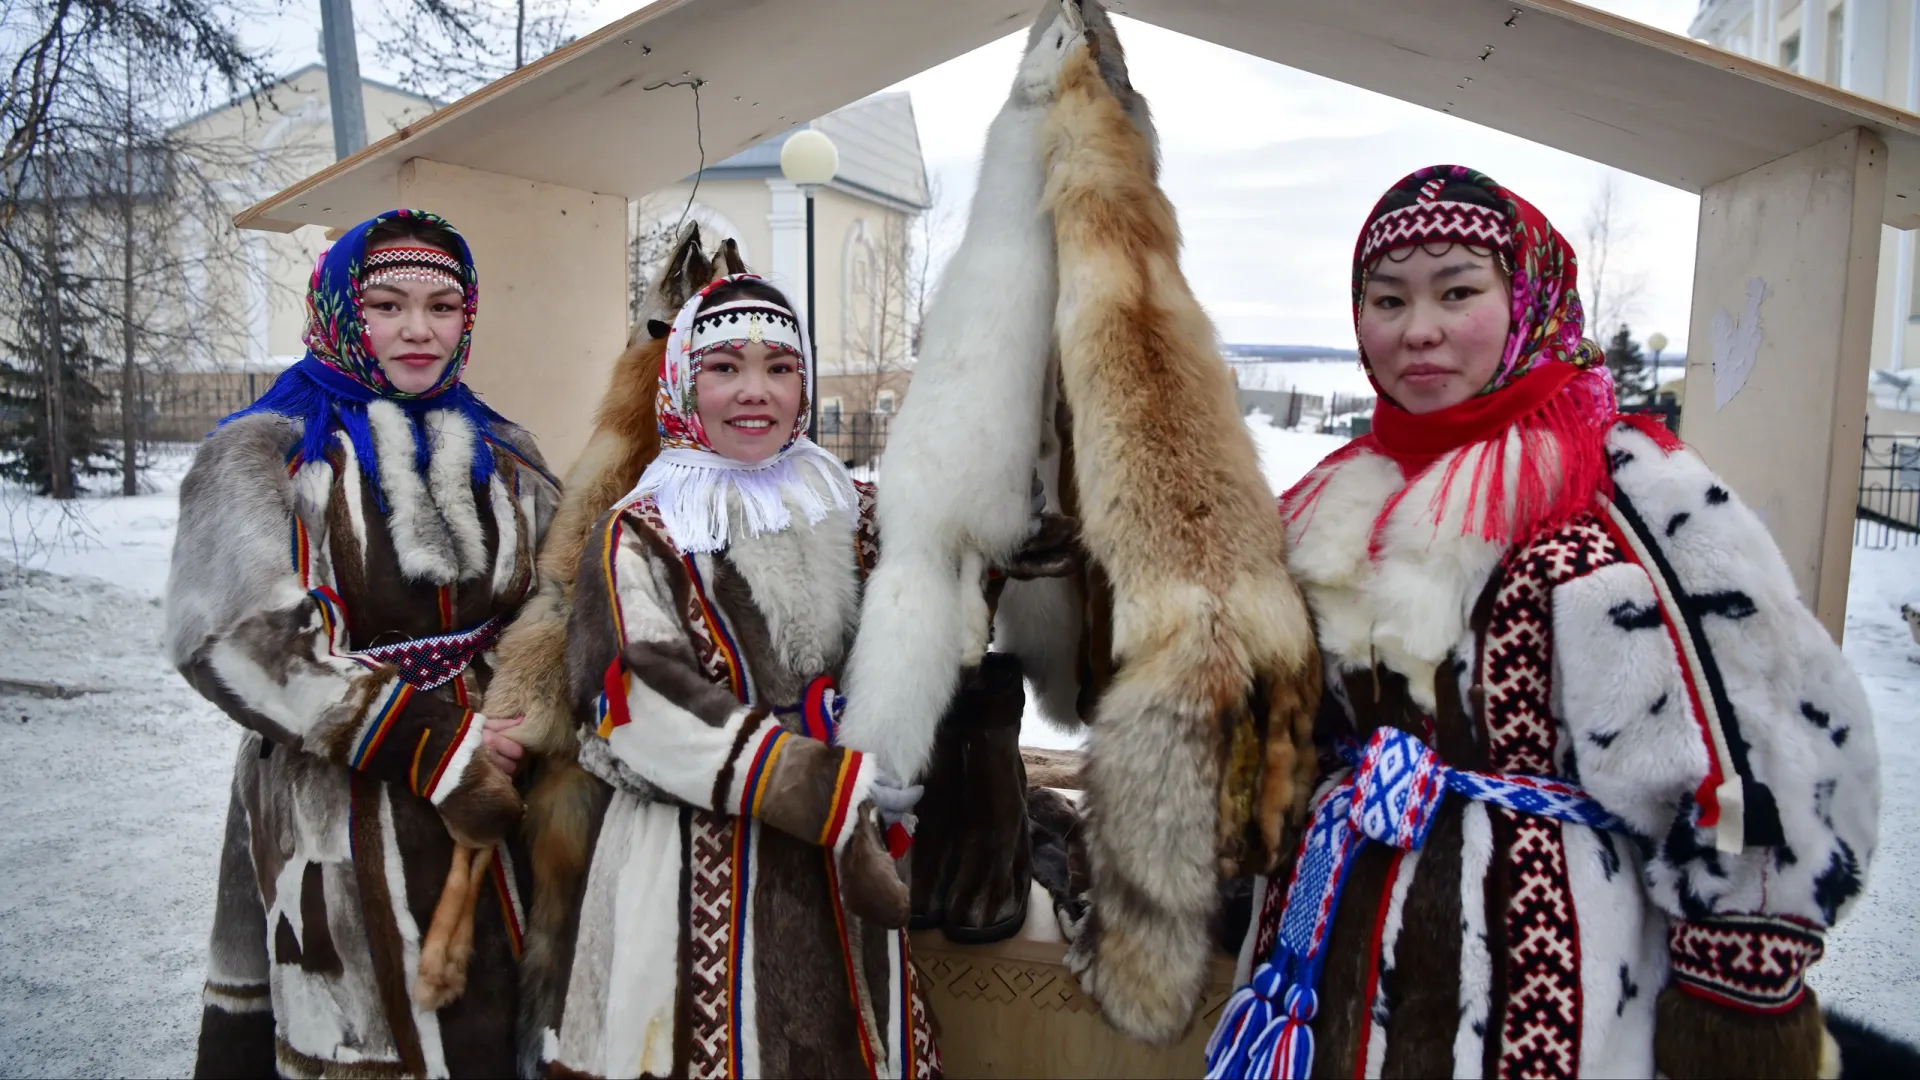 Пушнина традиционно использовалась в одежде северных народов. Фото: Андрей Ткачев / «Ямал-Медиа»